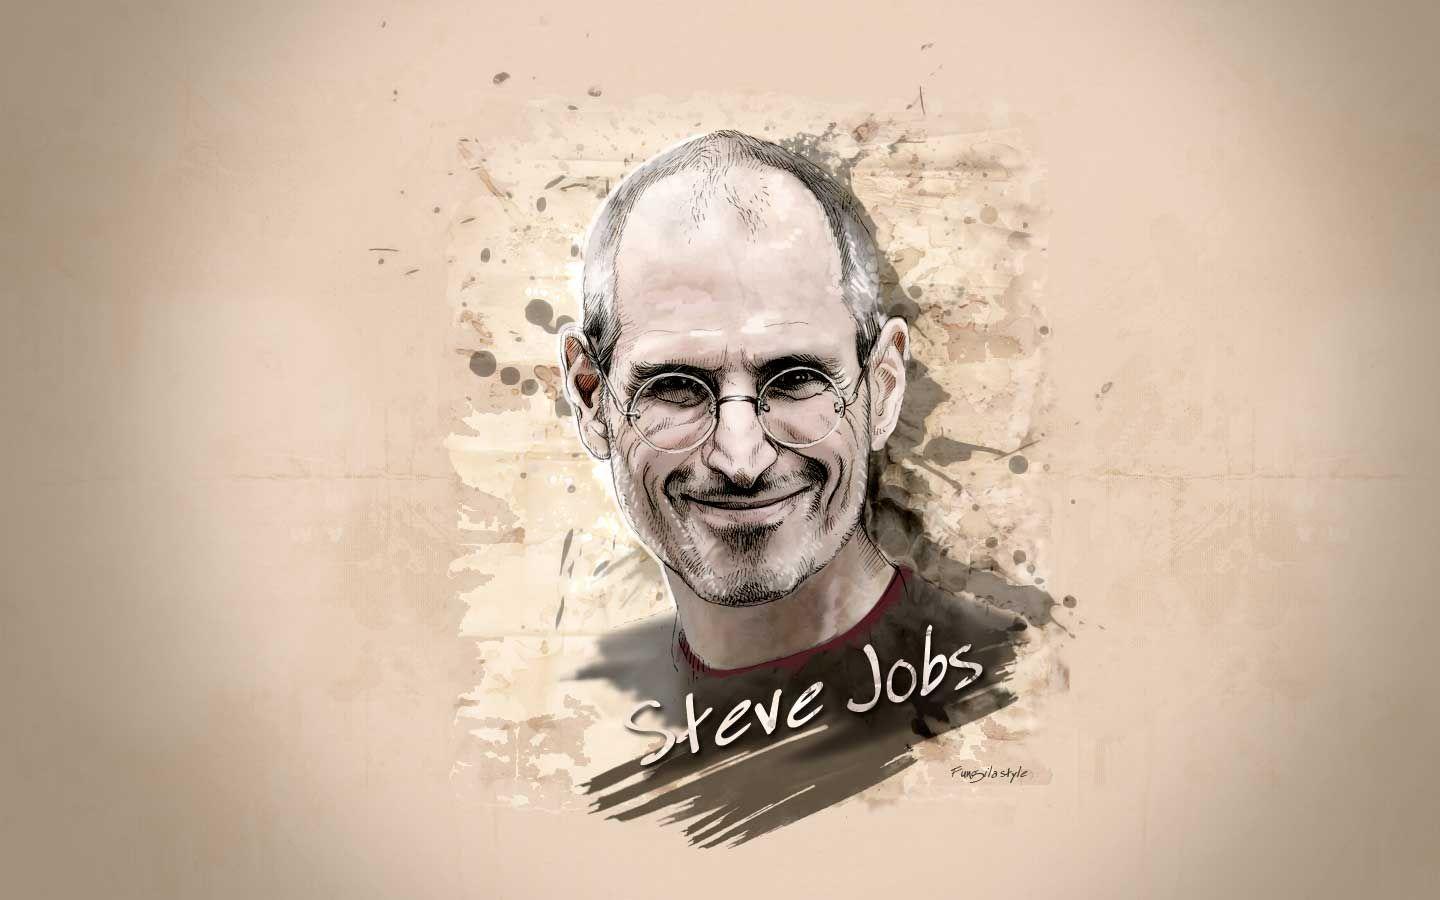 Steve Jobs , HD Wallpaper & Backgrounds